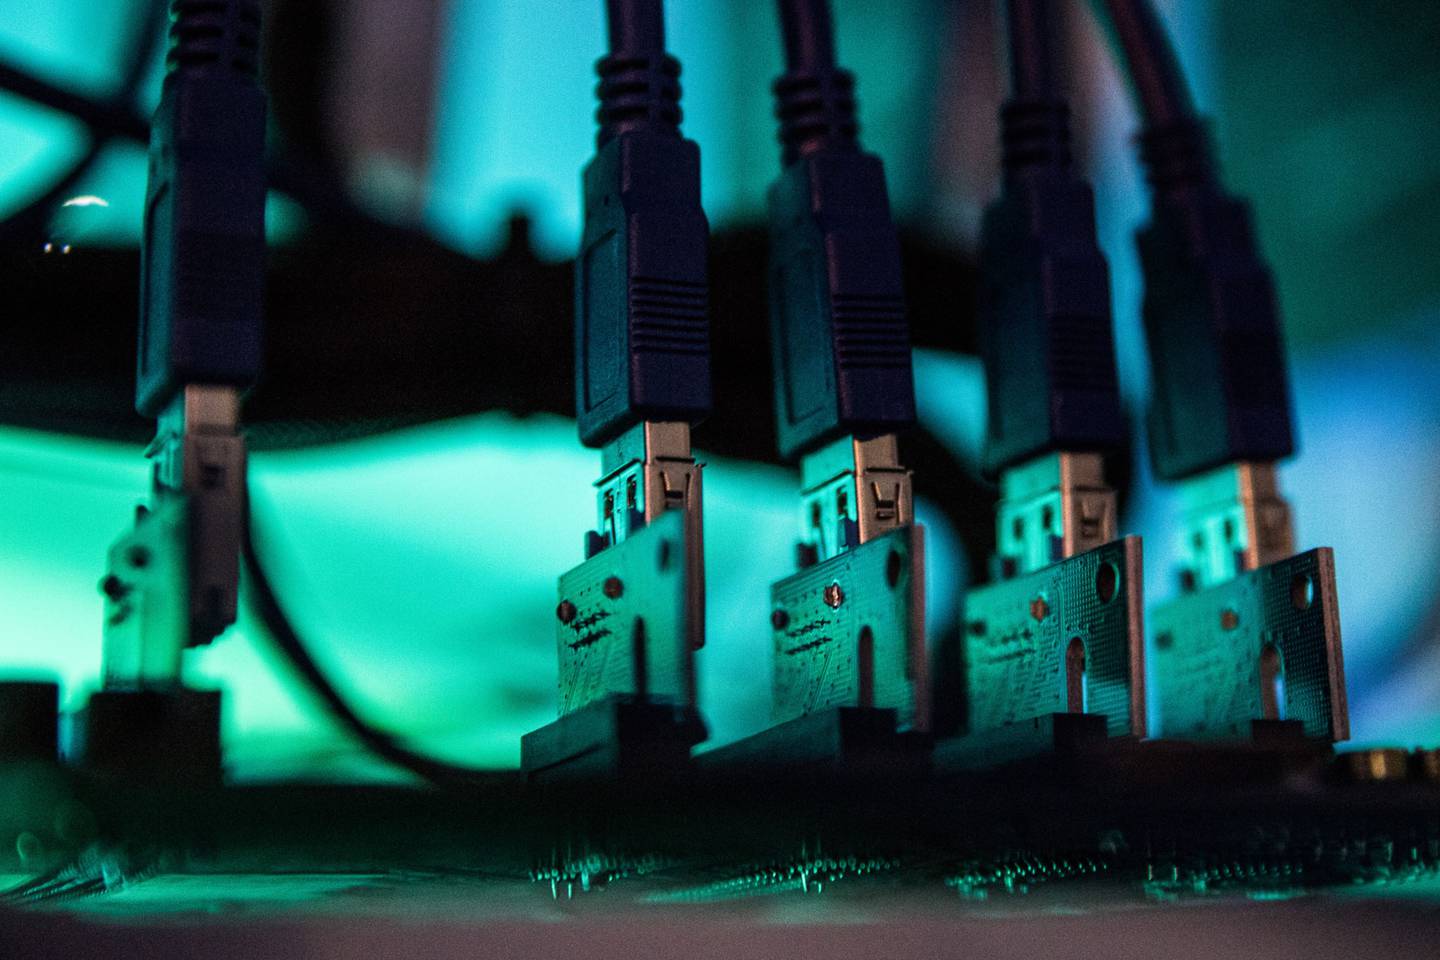 Las luces iluminan los cables USB dentro de una computadora de "plataforma de minería", utilizada para extraer criptomonedas, en Budapest, Hungría, el miércoles 31 de enero de 2018. Foto: Akos Stiller/Bloomberg